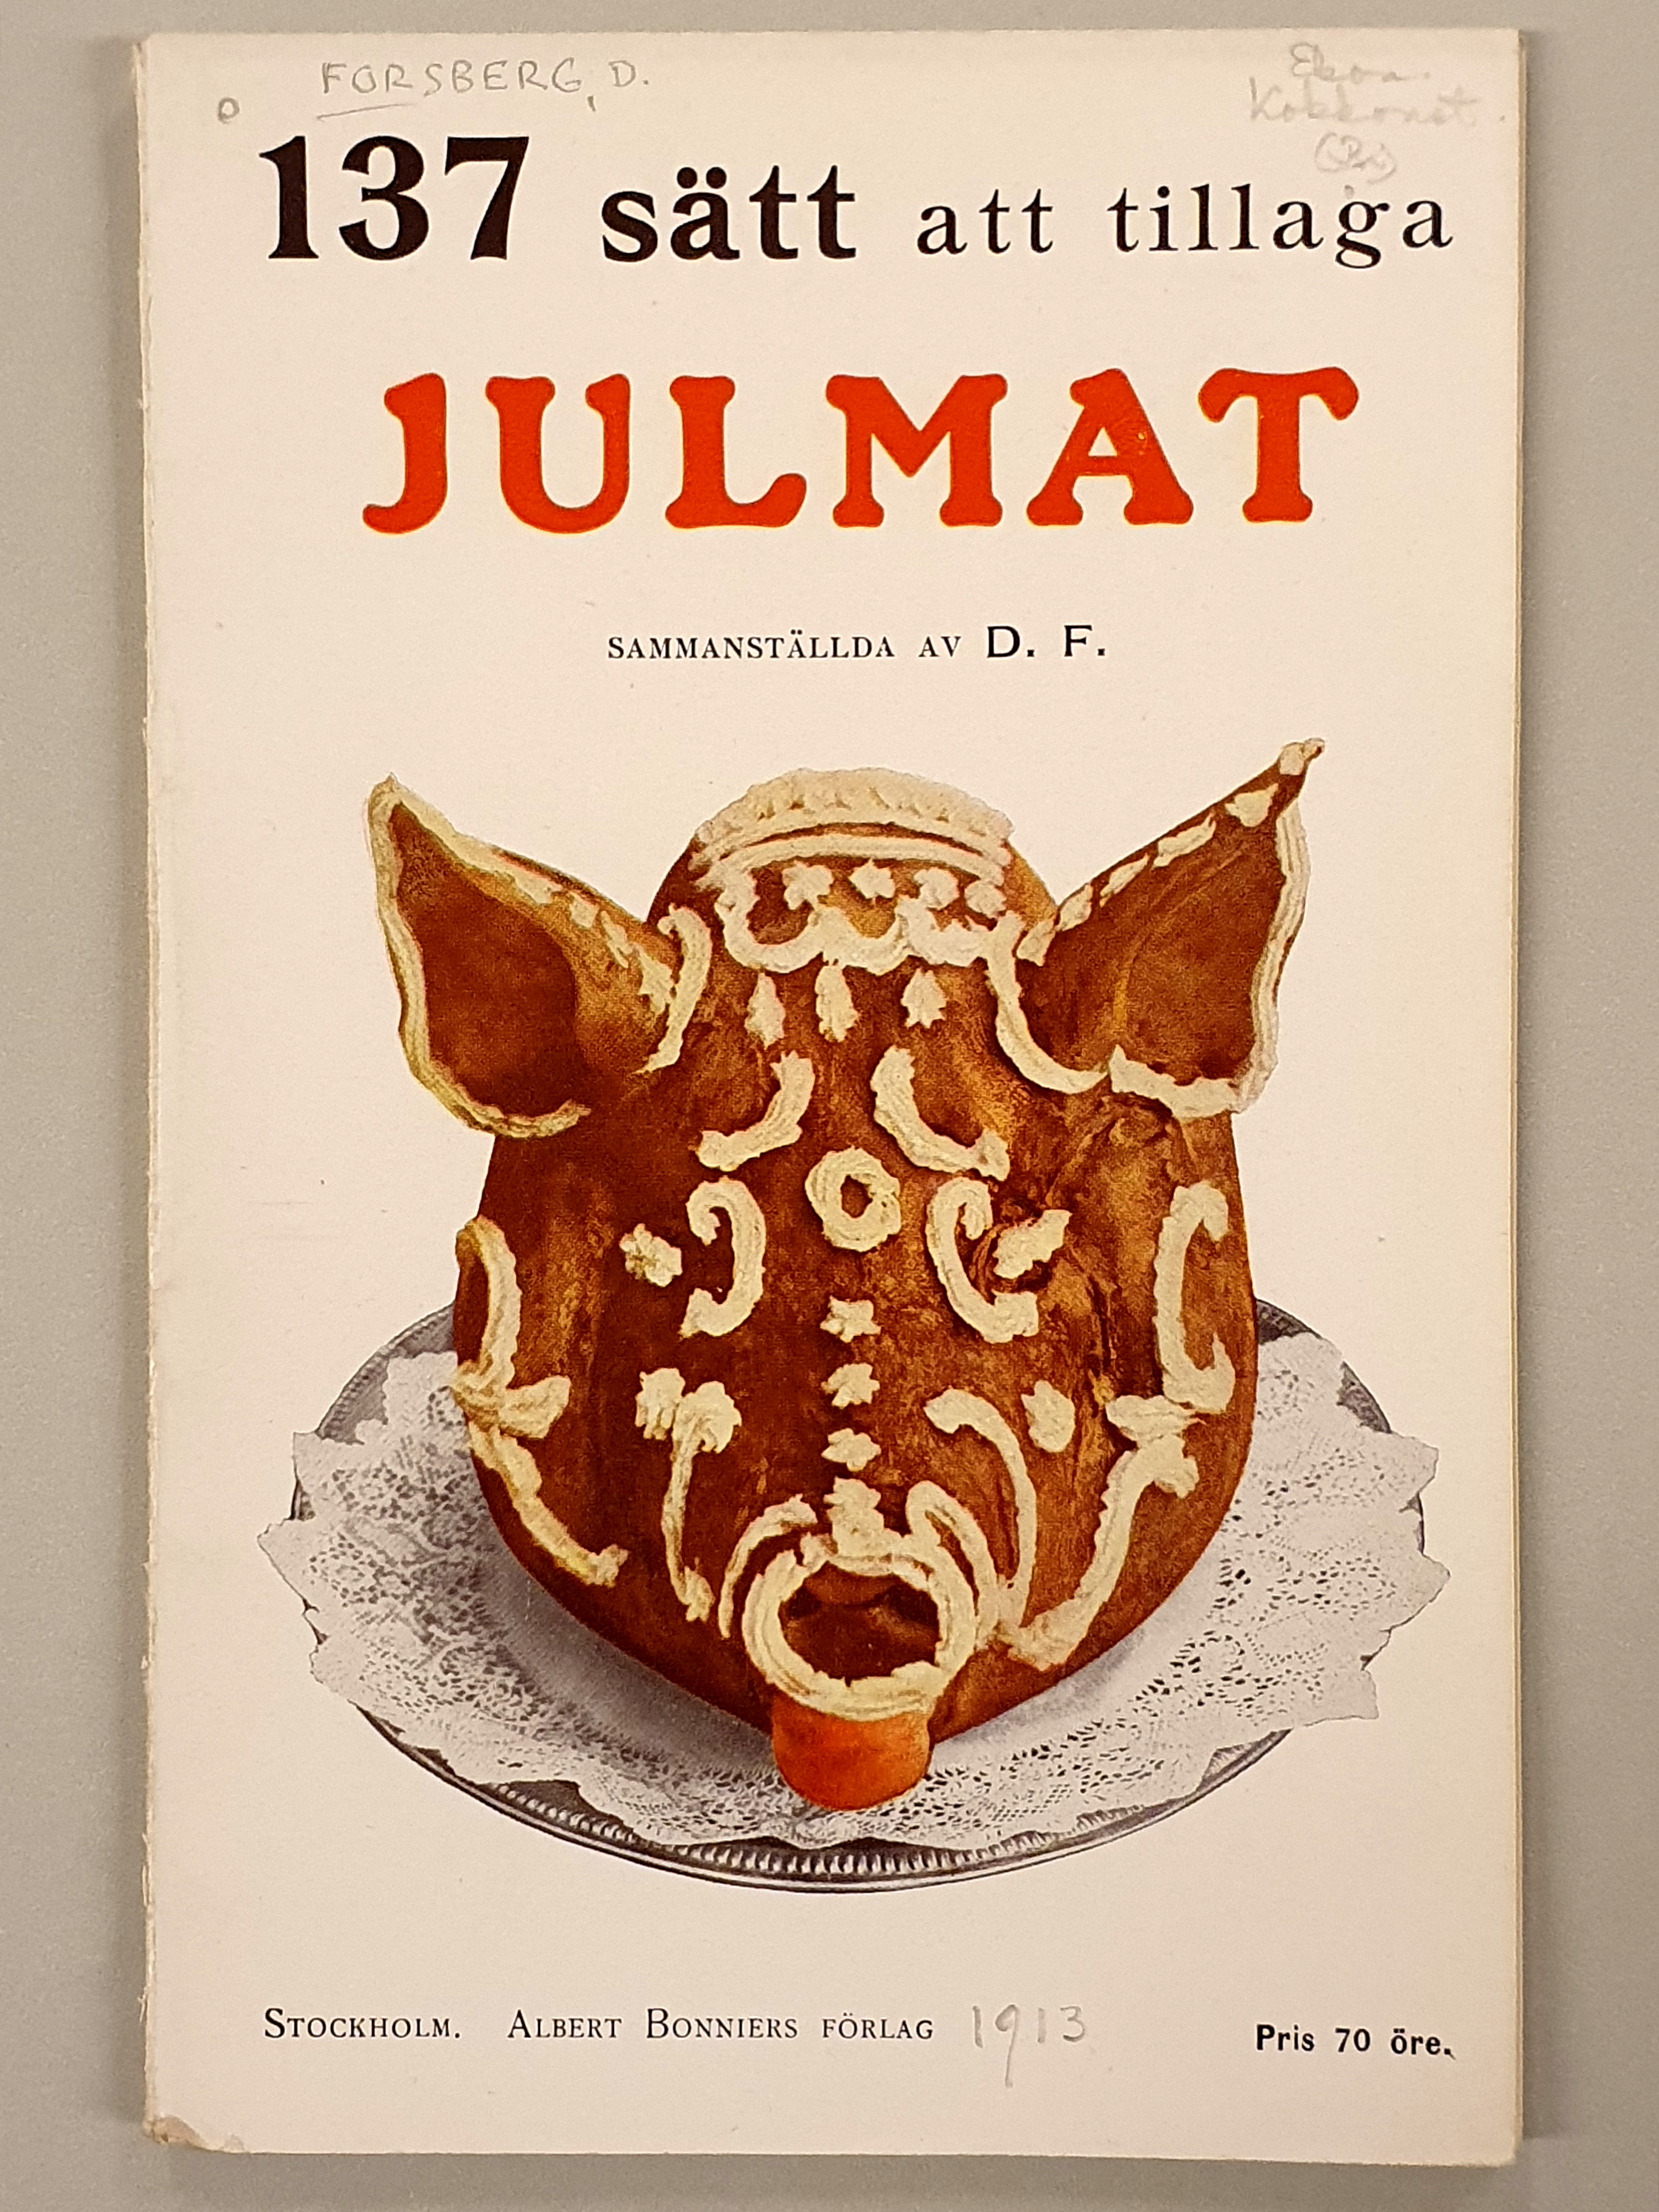 Foto av en kokbok om julmat med svart och röd text mot en vit bakgrund. På omslaget finns även ett foto av ett grishuvud garnerat med kristyr.